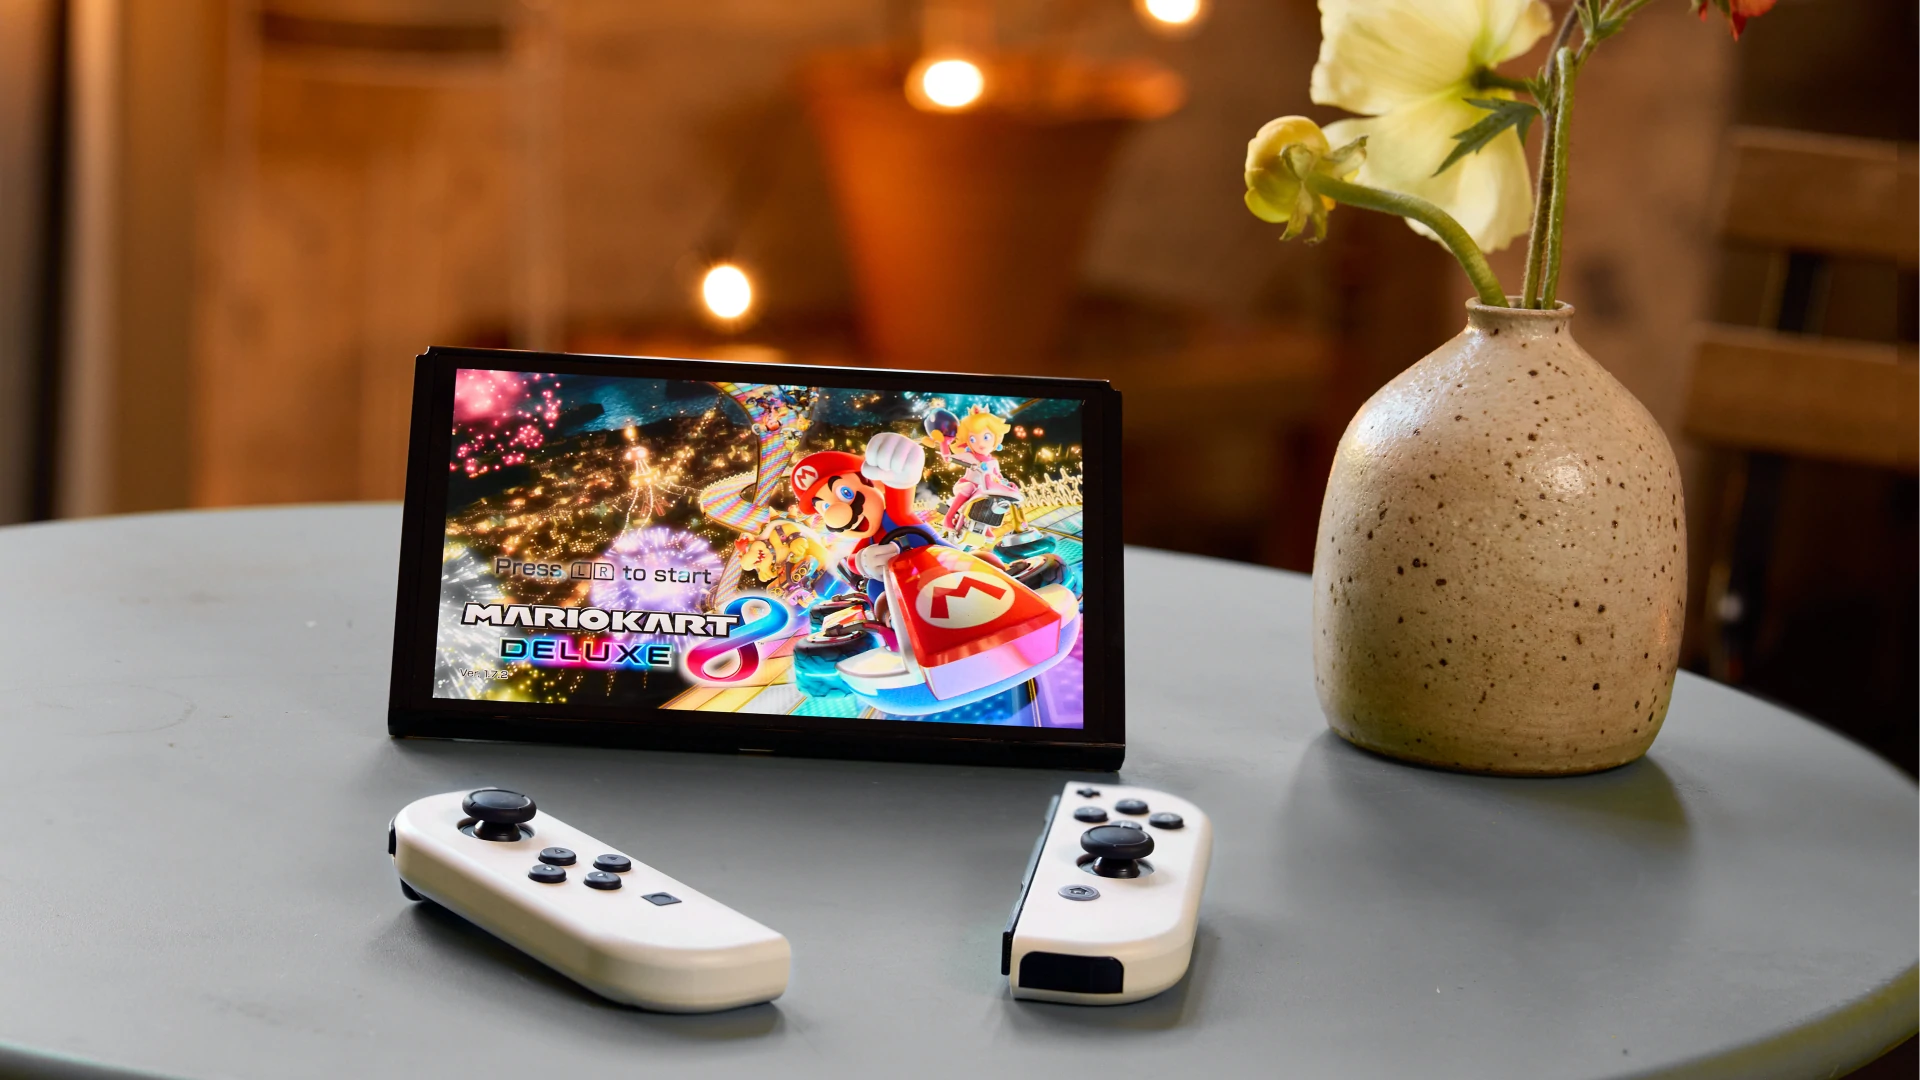 Herná konzola Nintendo Switch OLED je vybavená vnútornou flash pamäťou eMMC s kapacitou 64 GB pre vaše obľúbené hry a aplikácie.